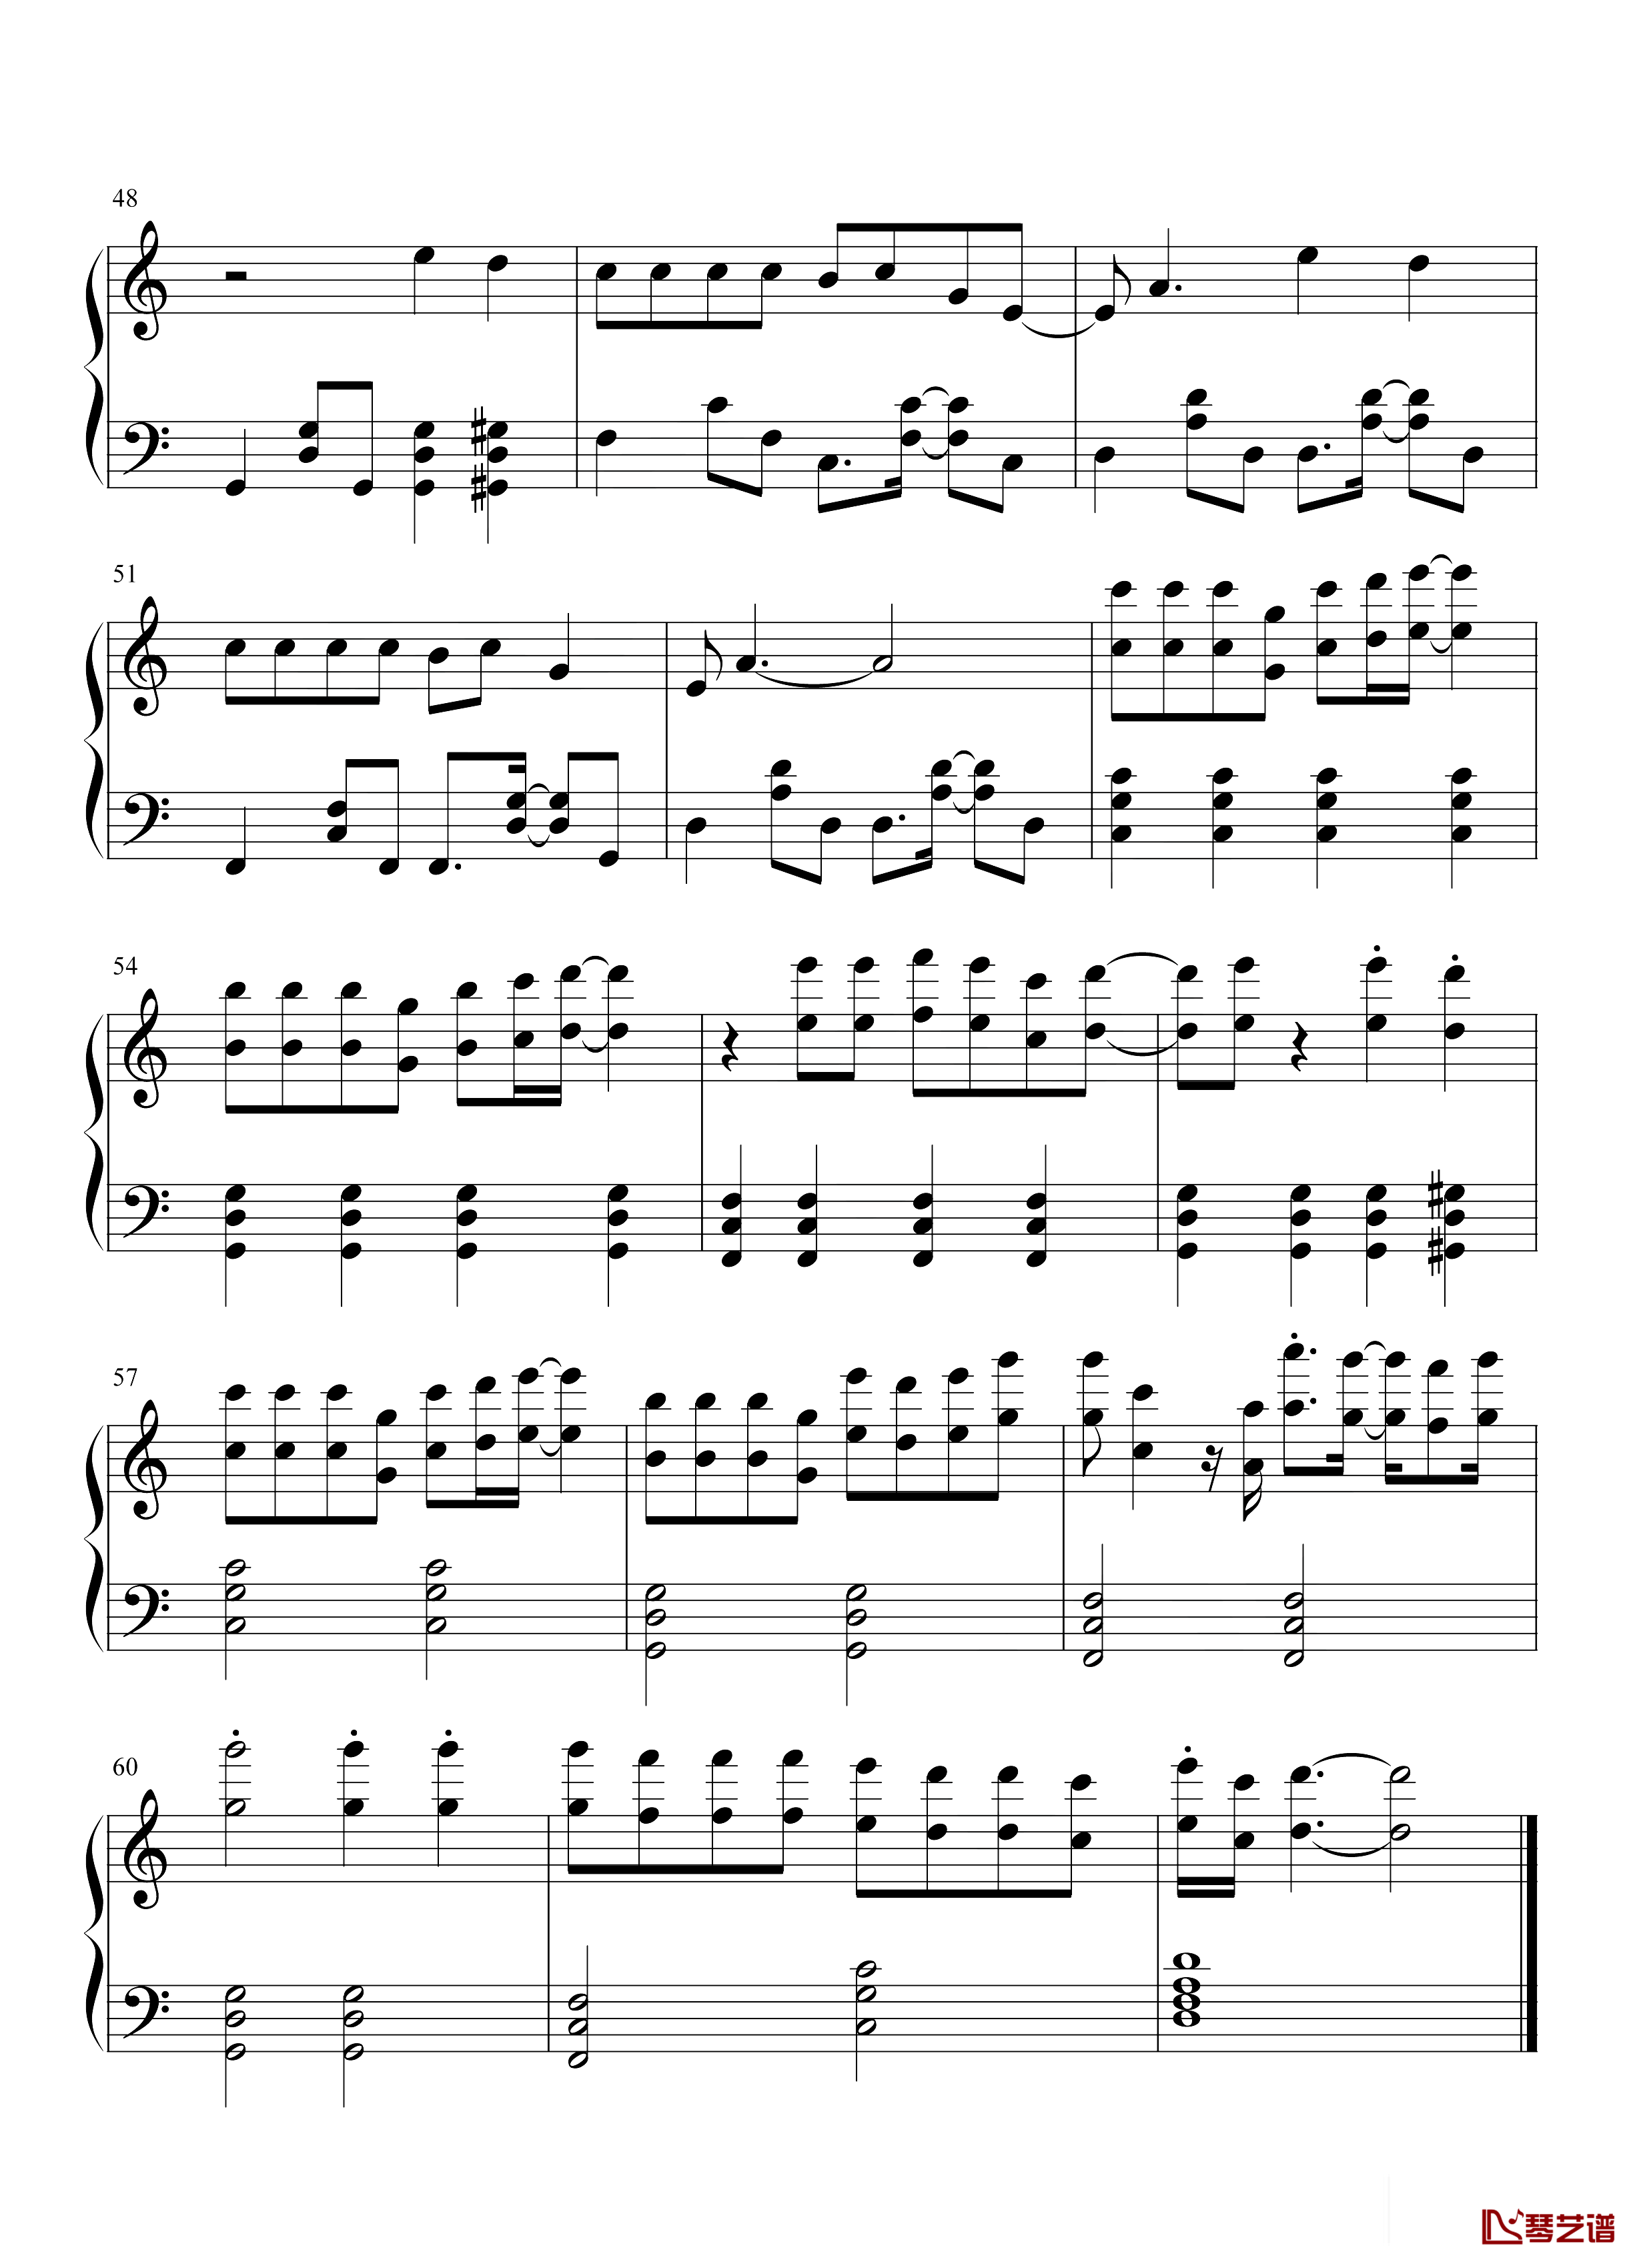 钢琴谱唯一-王力宏-王力宏最具流行度的作品之一!4